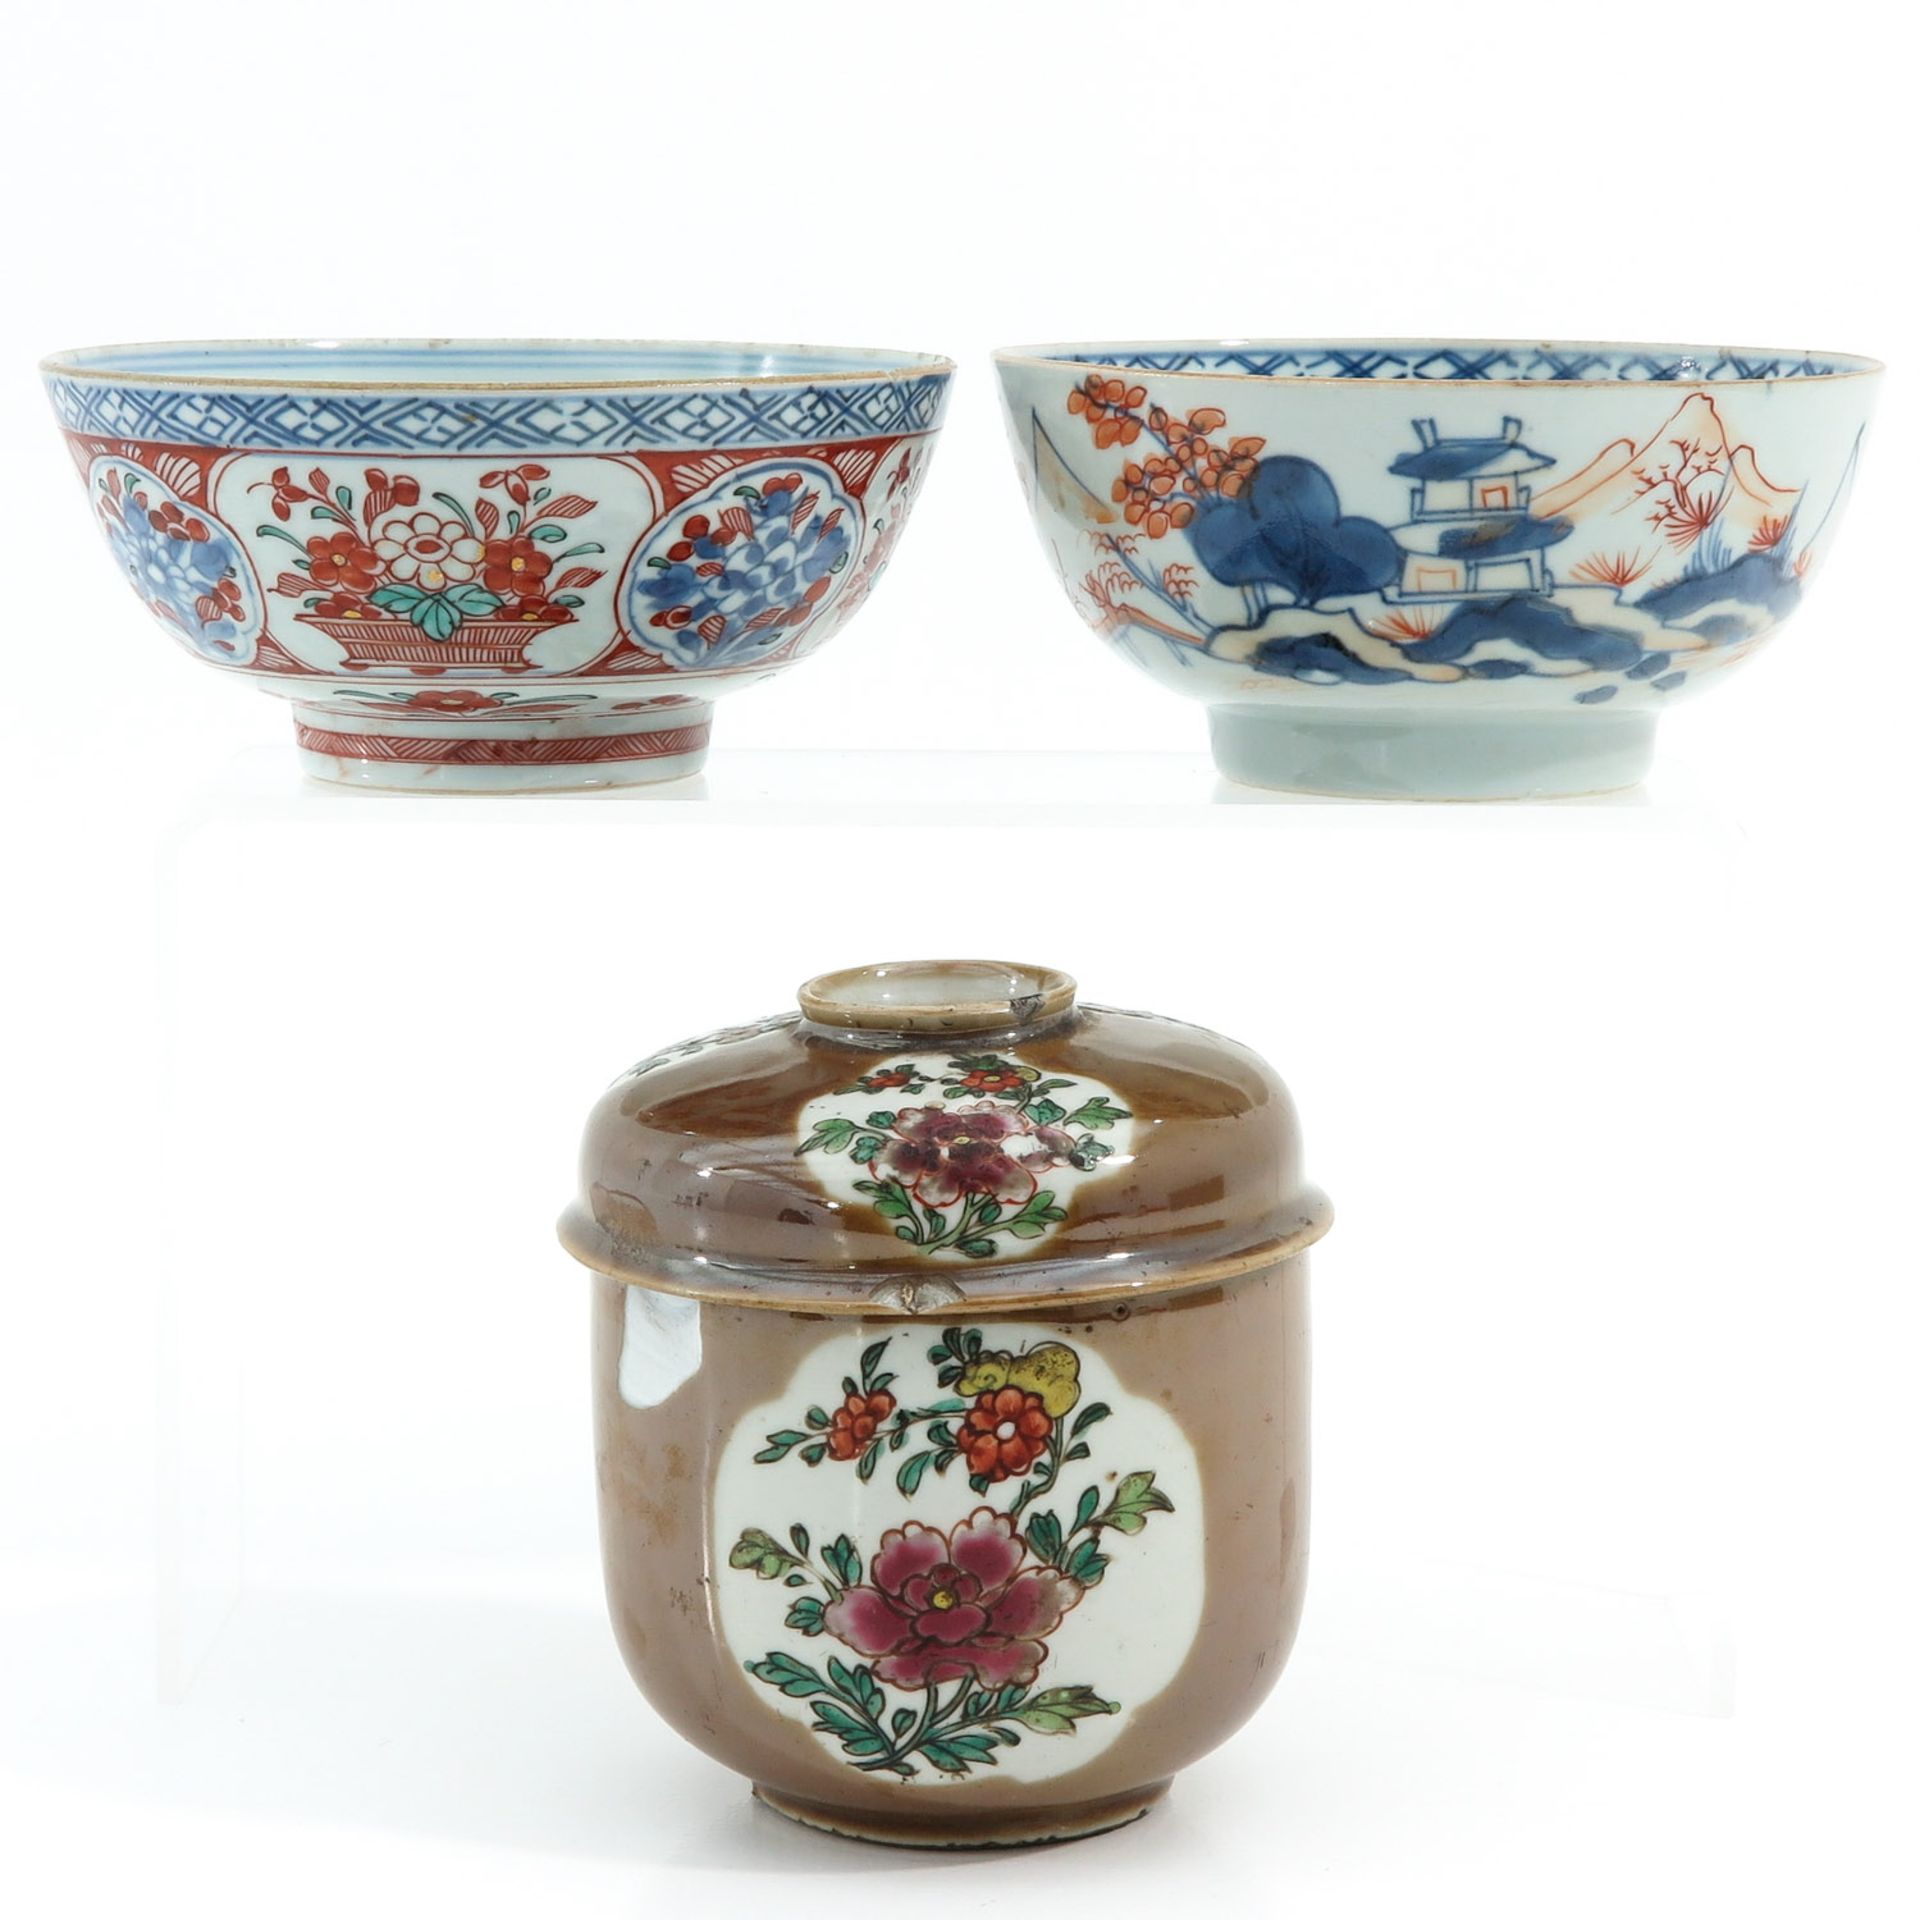 A Batavianware Jar and 2 Bowls